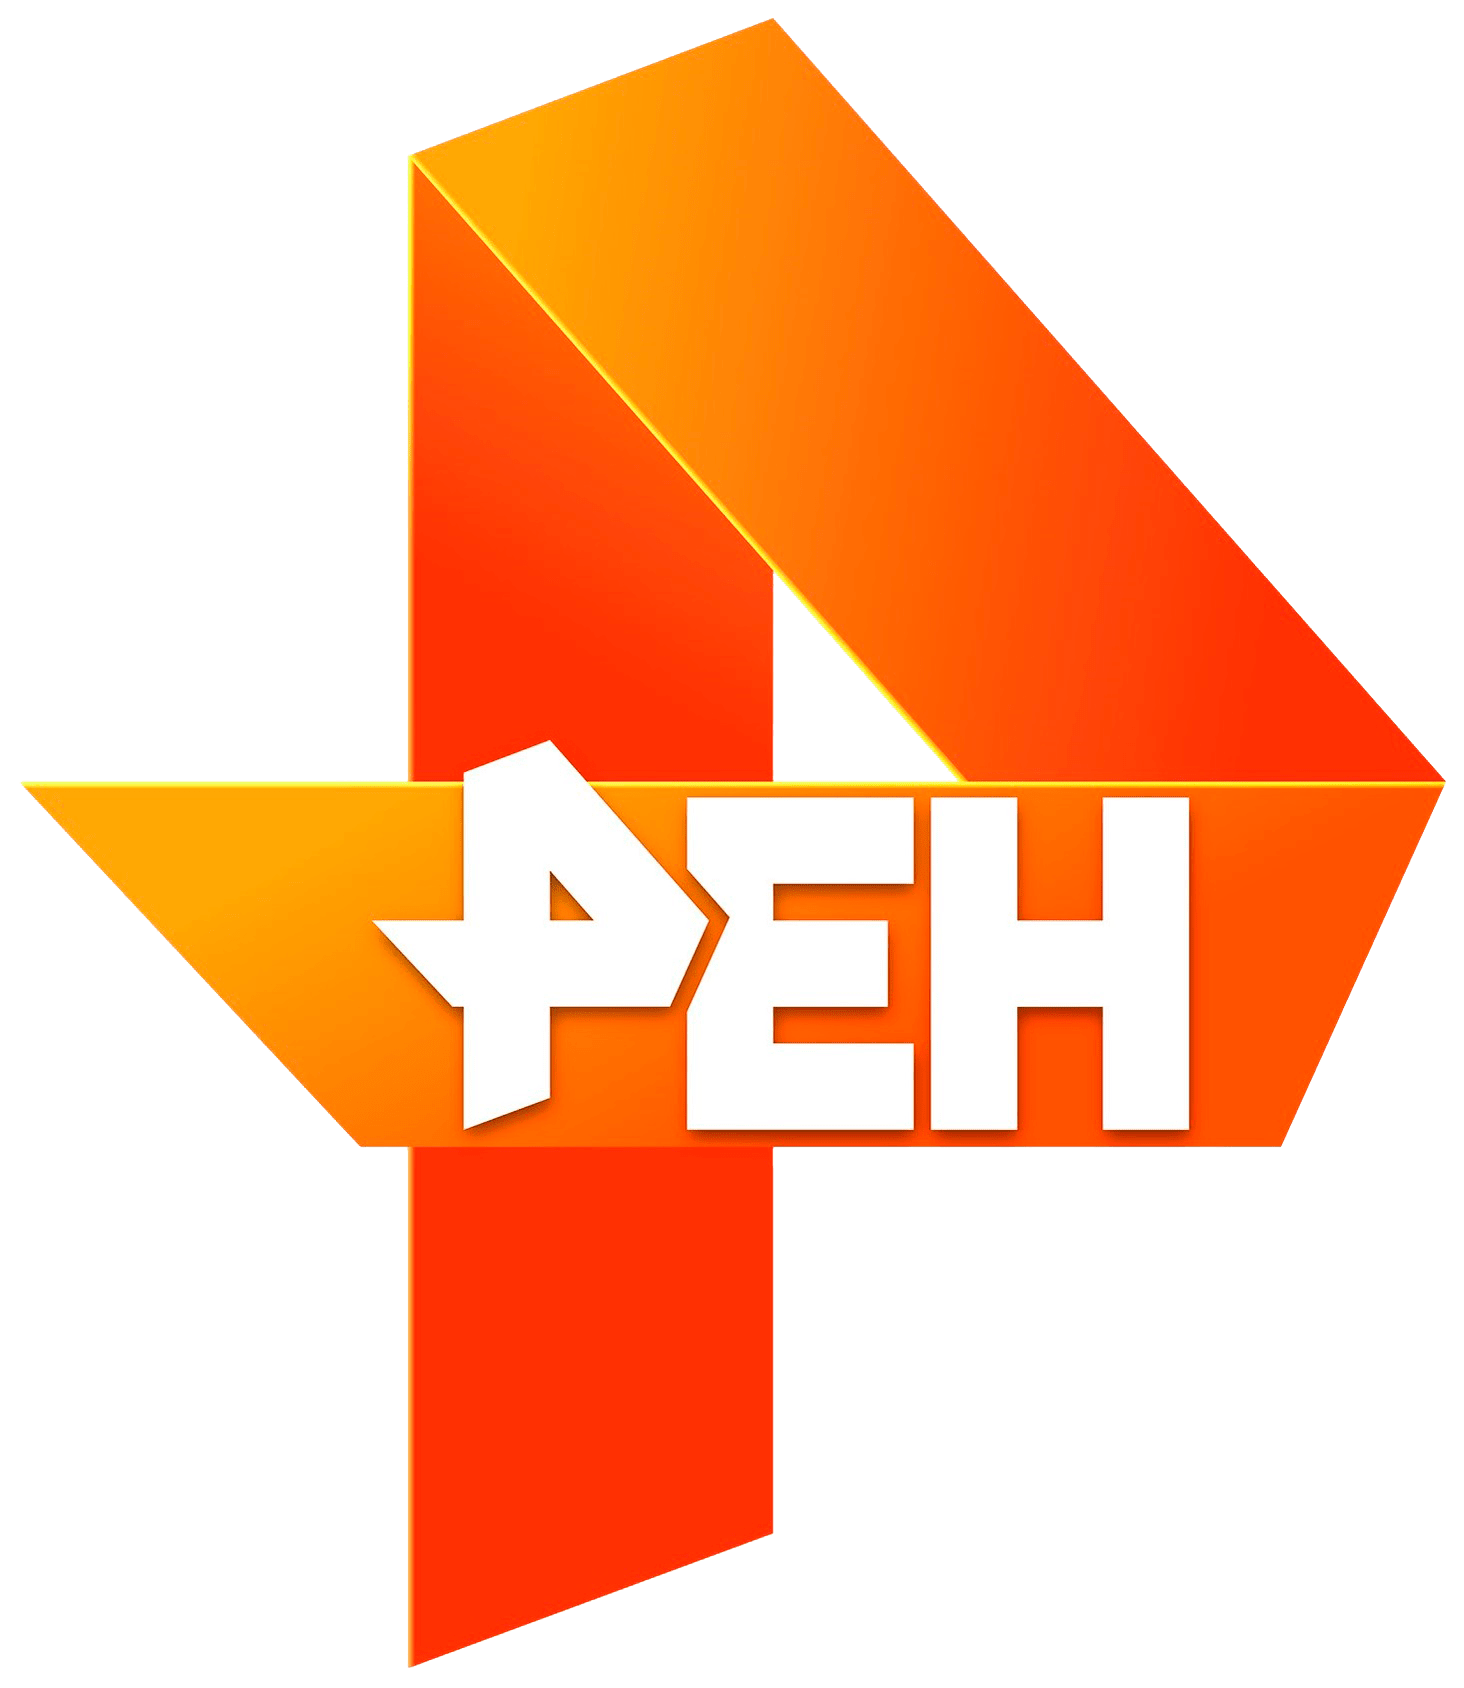 Раземщение рекламы РЕН ТВ, г. Ульяновск